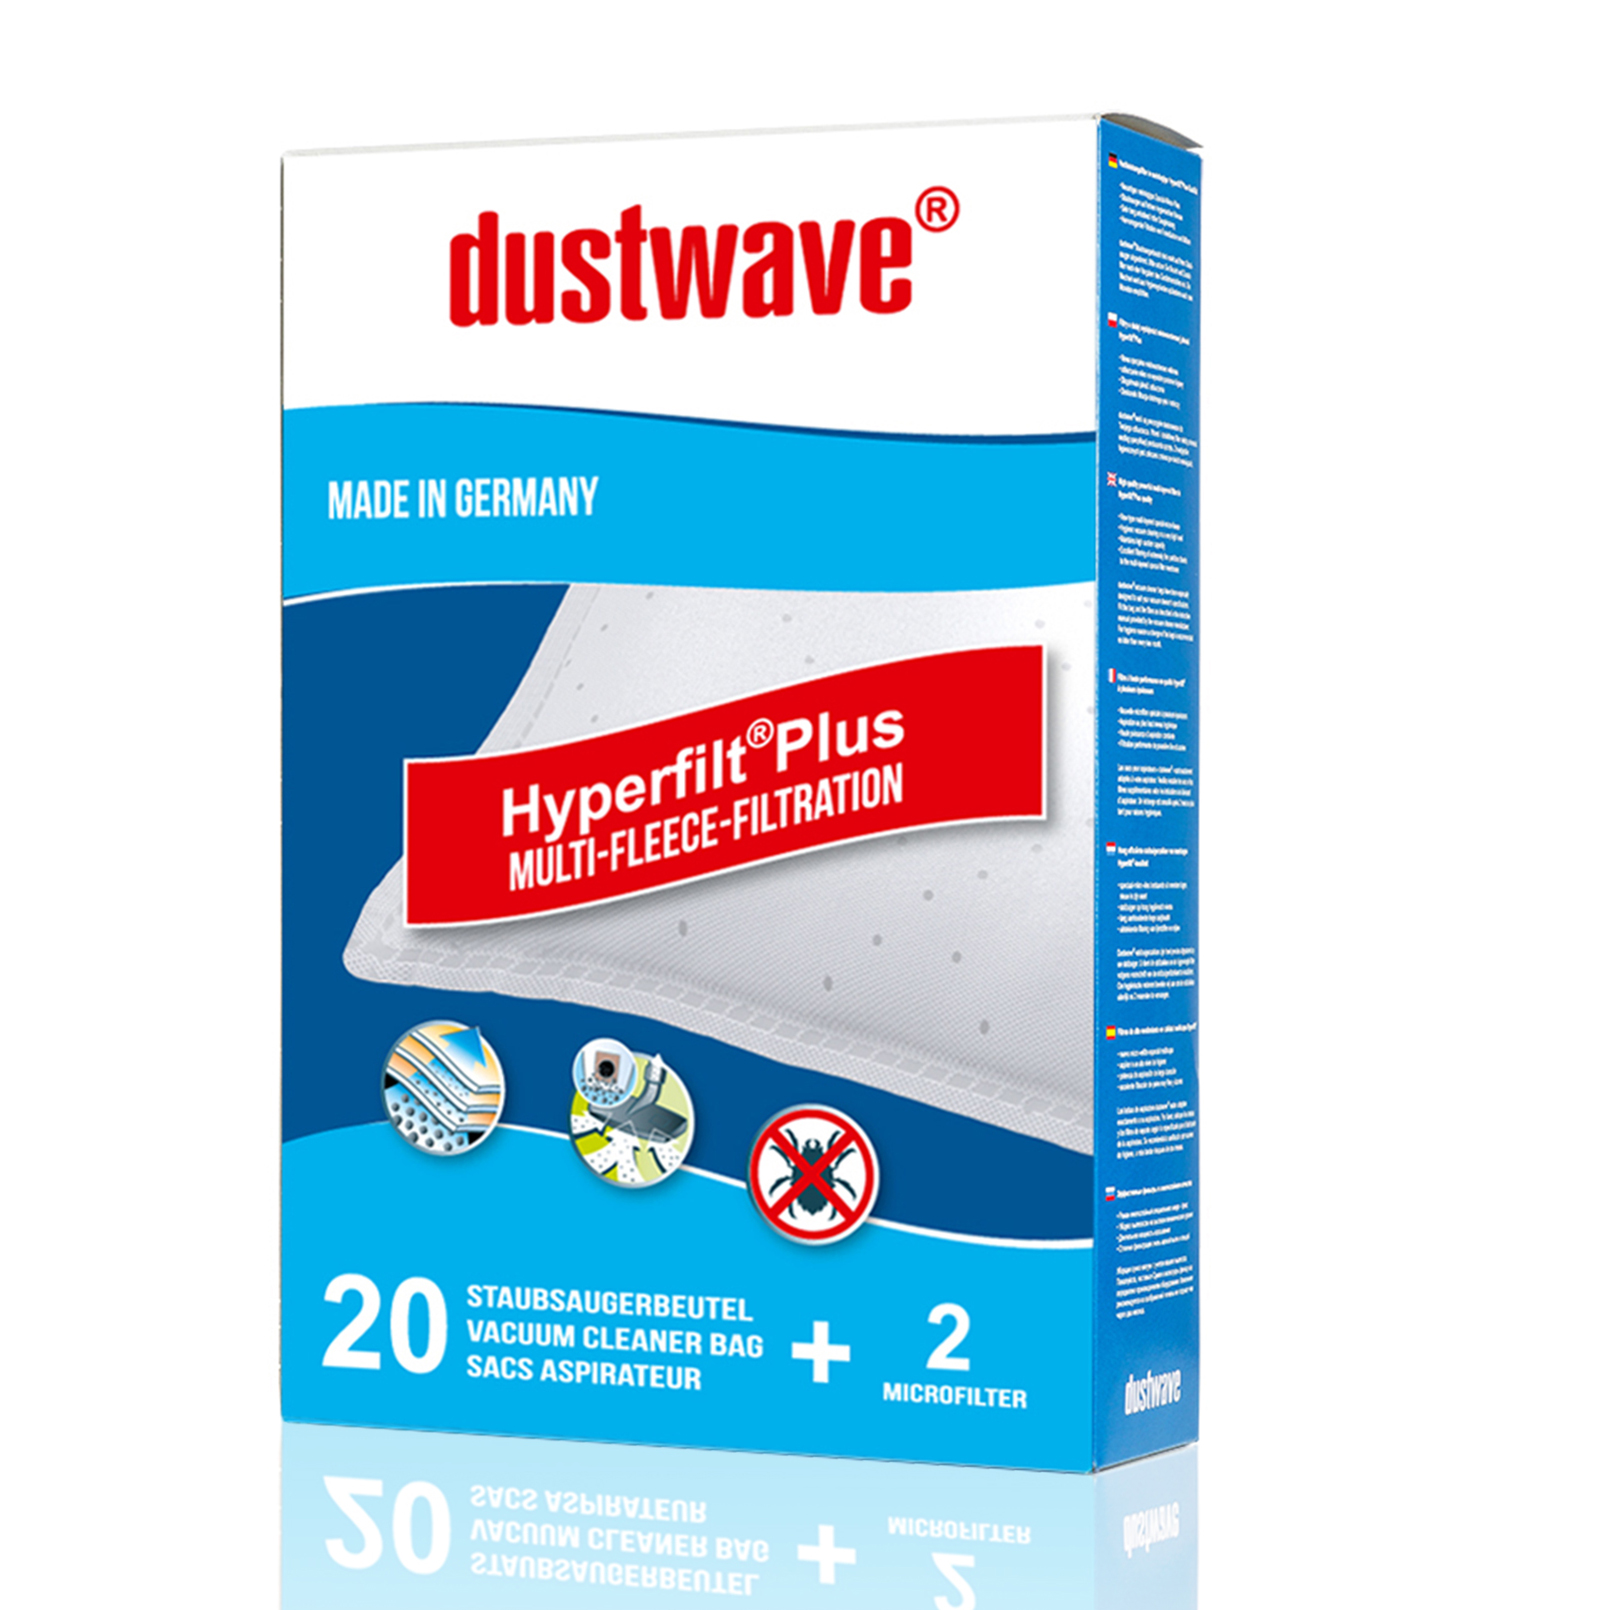 Dustwave® 5 Staubsaugerbeutel für Miele Clean Care - hocheffizient, mehrlagiges Mikrovlies mit Hygieneverschluss - Made in Germany